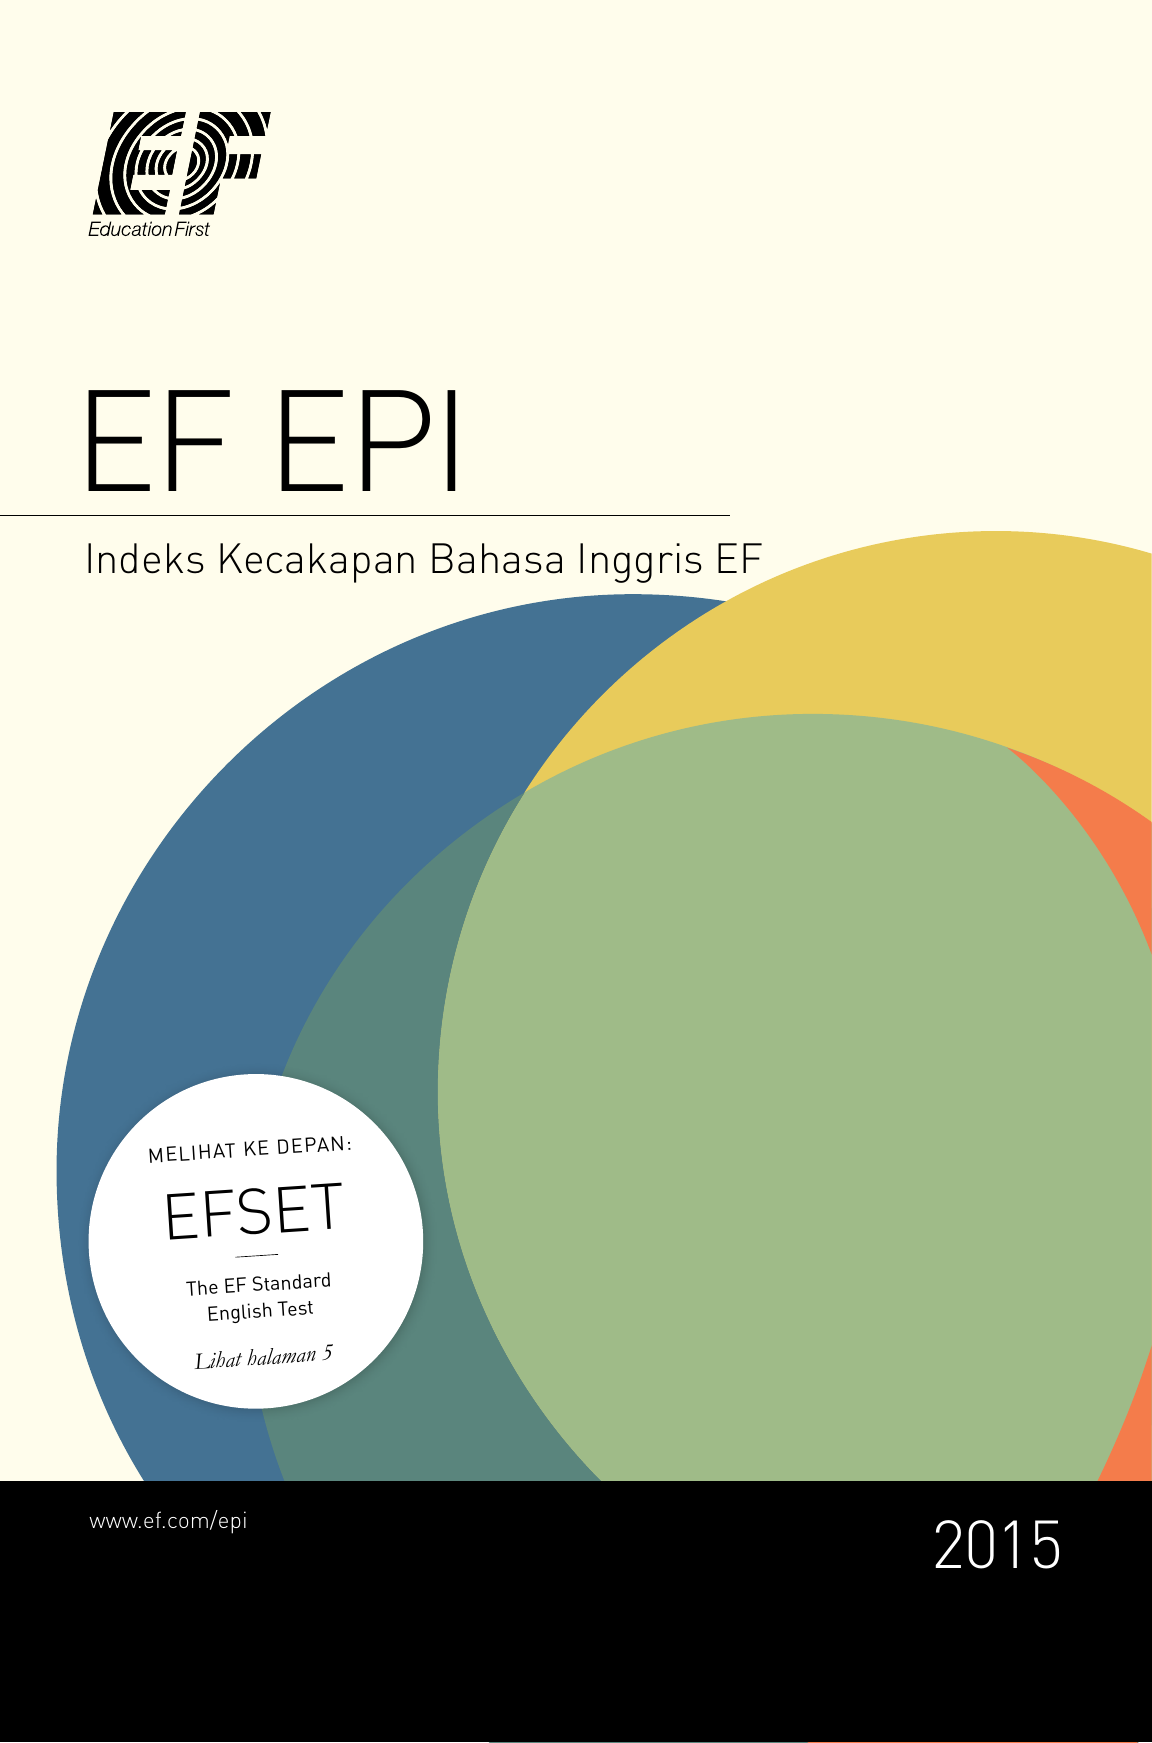 EF EPI Indeks Kecakapan Bahasa Inggris EF PA N M EL IH AT KE DE EFSET The EF Standard English Test Lihat halaman 5 epi 2015 1 Berpartisipasi di